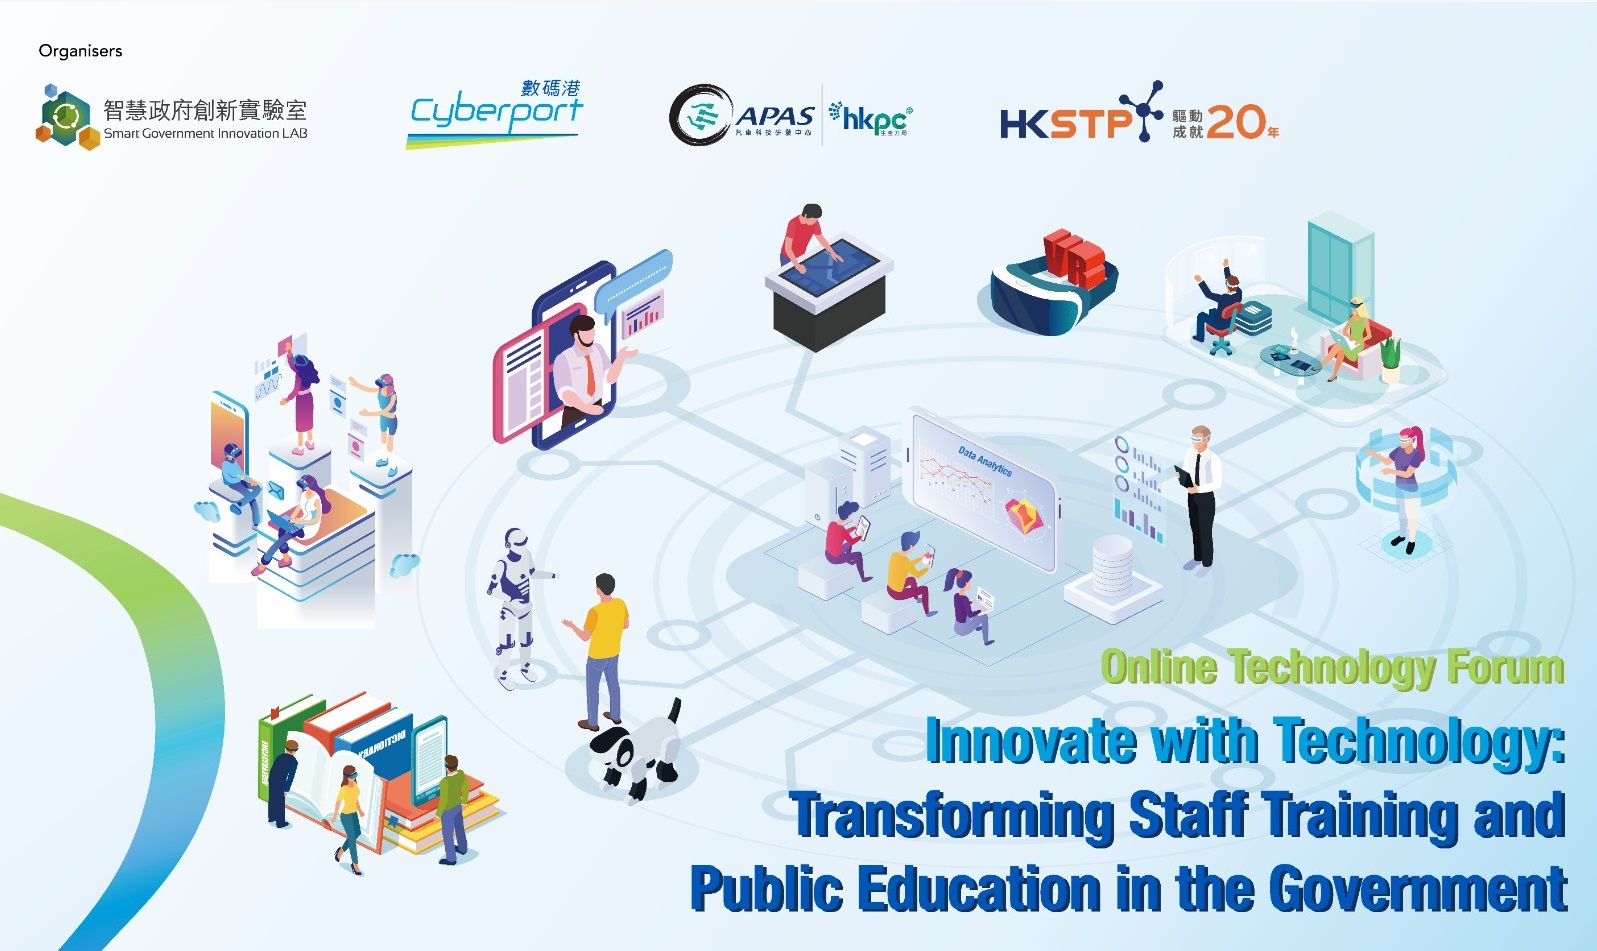 技術論壇 - 採用創新科技革新政府的員工培訓及公眾教育